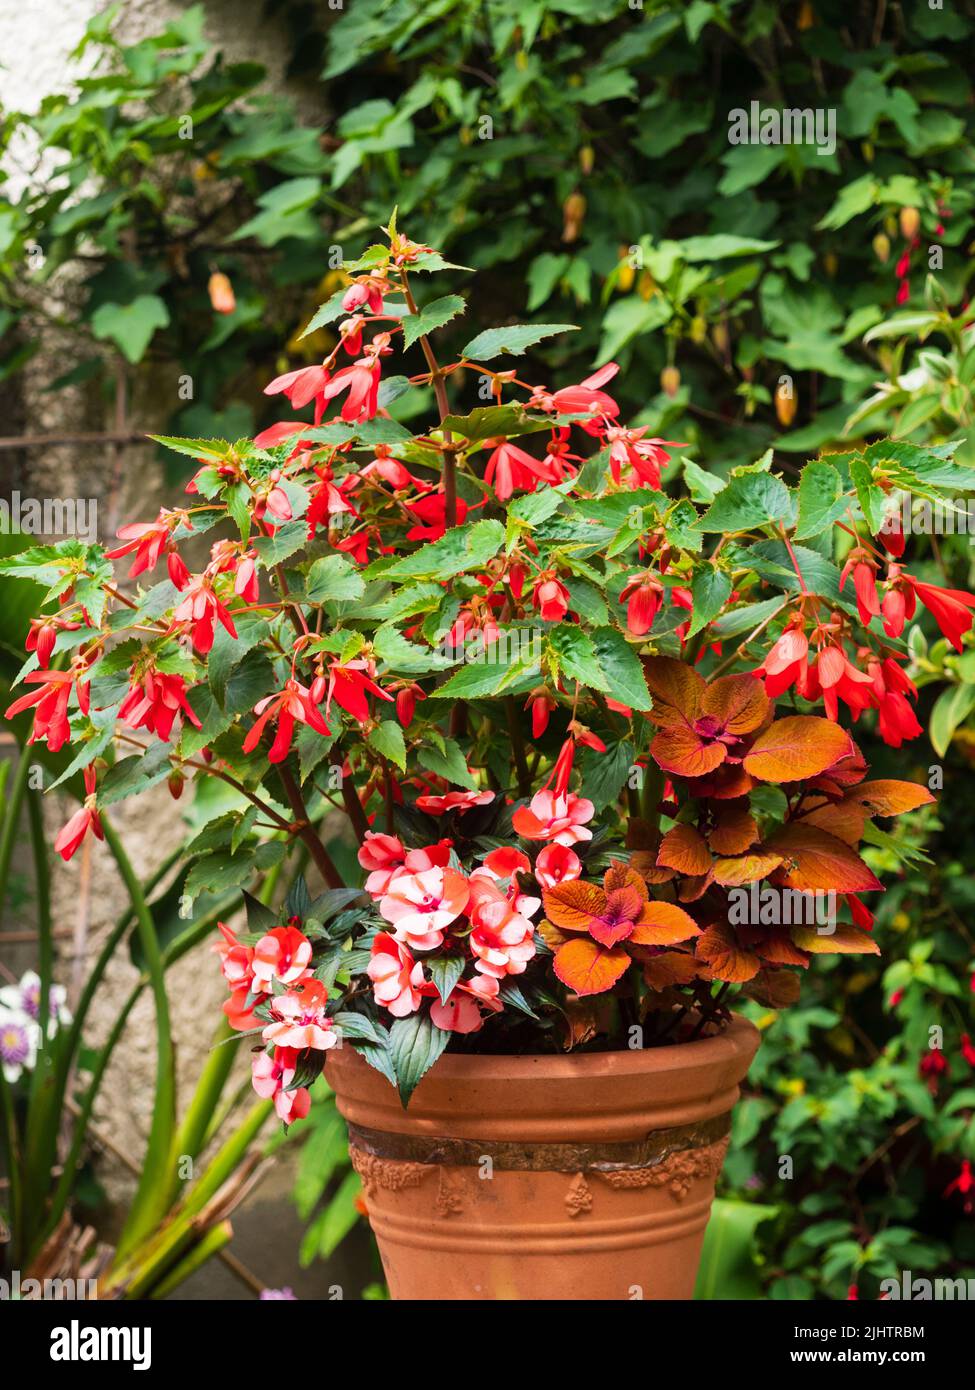 Contenitore estivo a tema rosso con un mix di Begonia boliviensis 'Bonaparte', Impatiens hawkeri 'Paradise Strawberry Bicolor', e Solenogestemon 'Caraway' Foto Stock